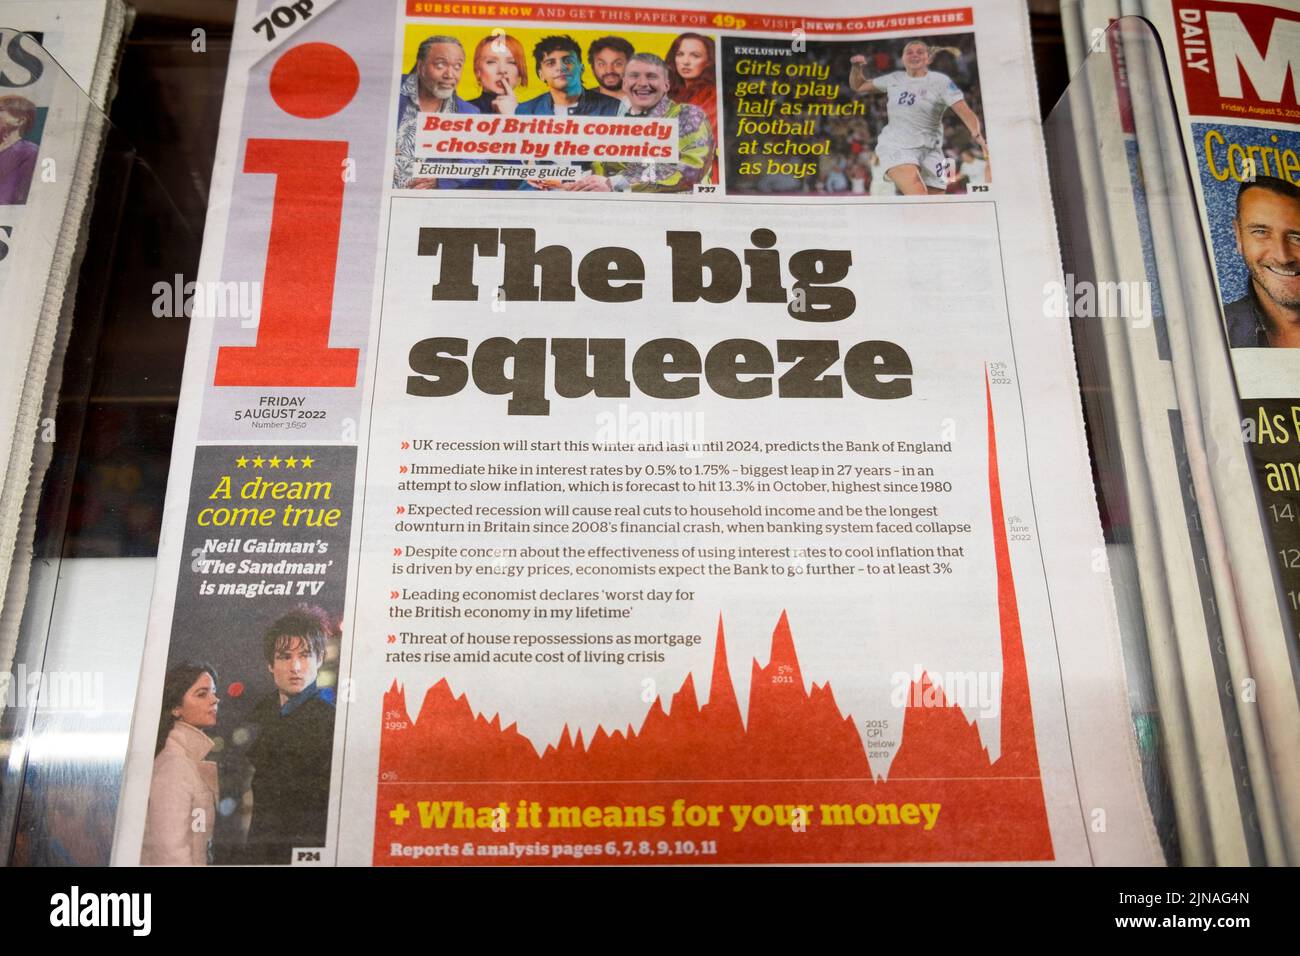 'The big squeeze' I artículo de la portada del titular del periódico el 6 de agosto de 2022 en Londres, Inglaterra, Reino Unido Foto de stock